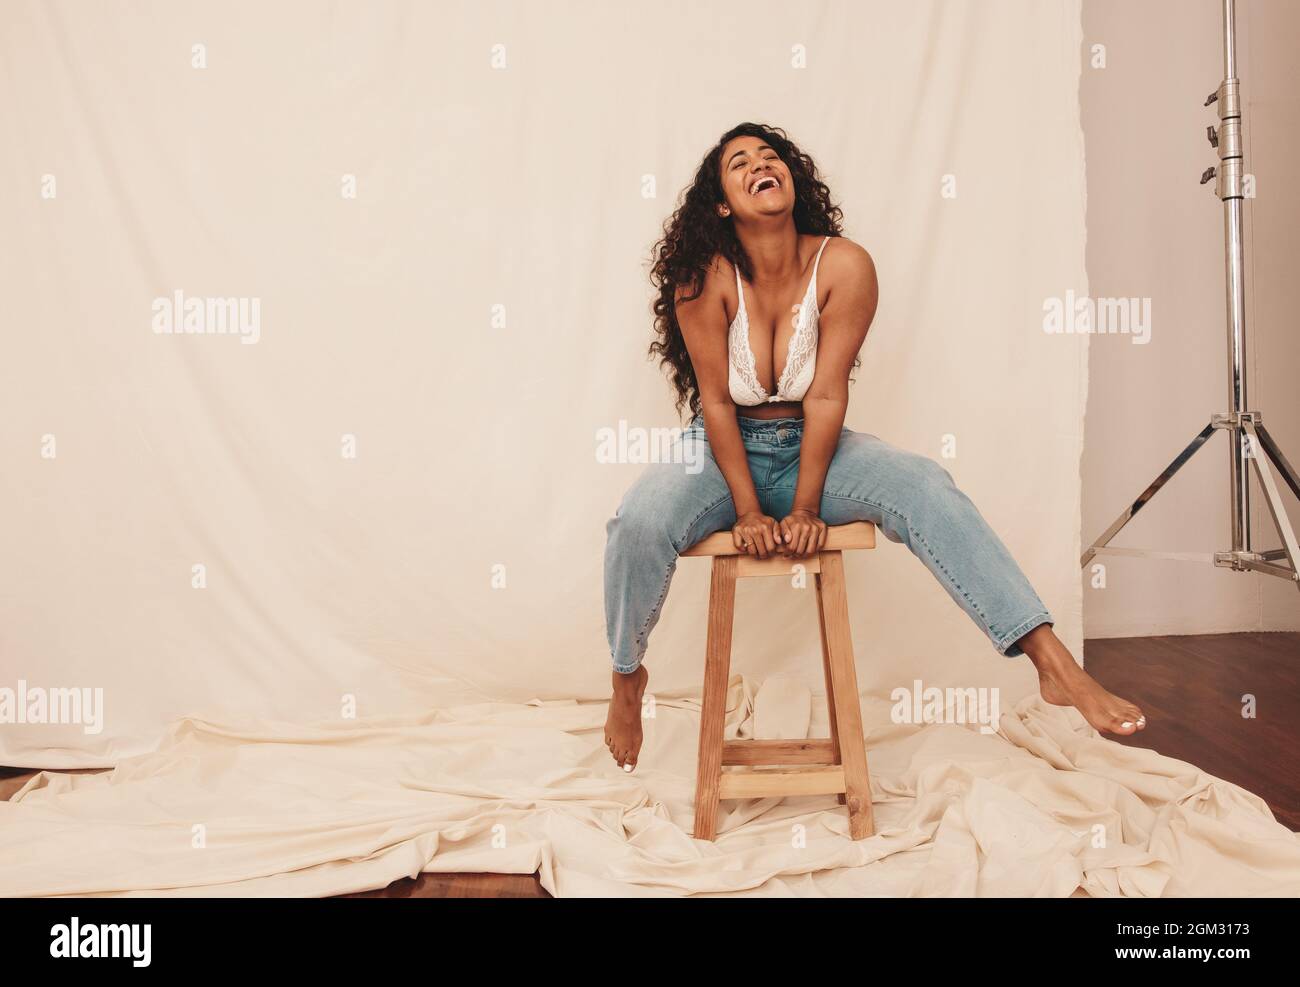 Frau lacht fröhlich, während sie auf einem Stuhl in einem Studio sitzt. Fröhliche junge Frau in Denim-Jeans und einem BH vor einem Studiohintergrund. Junge Wom Stockfoto